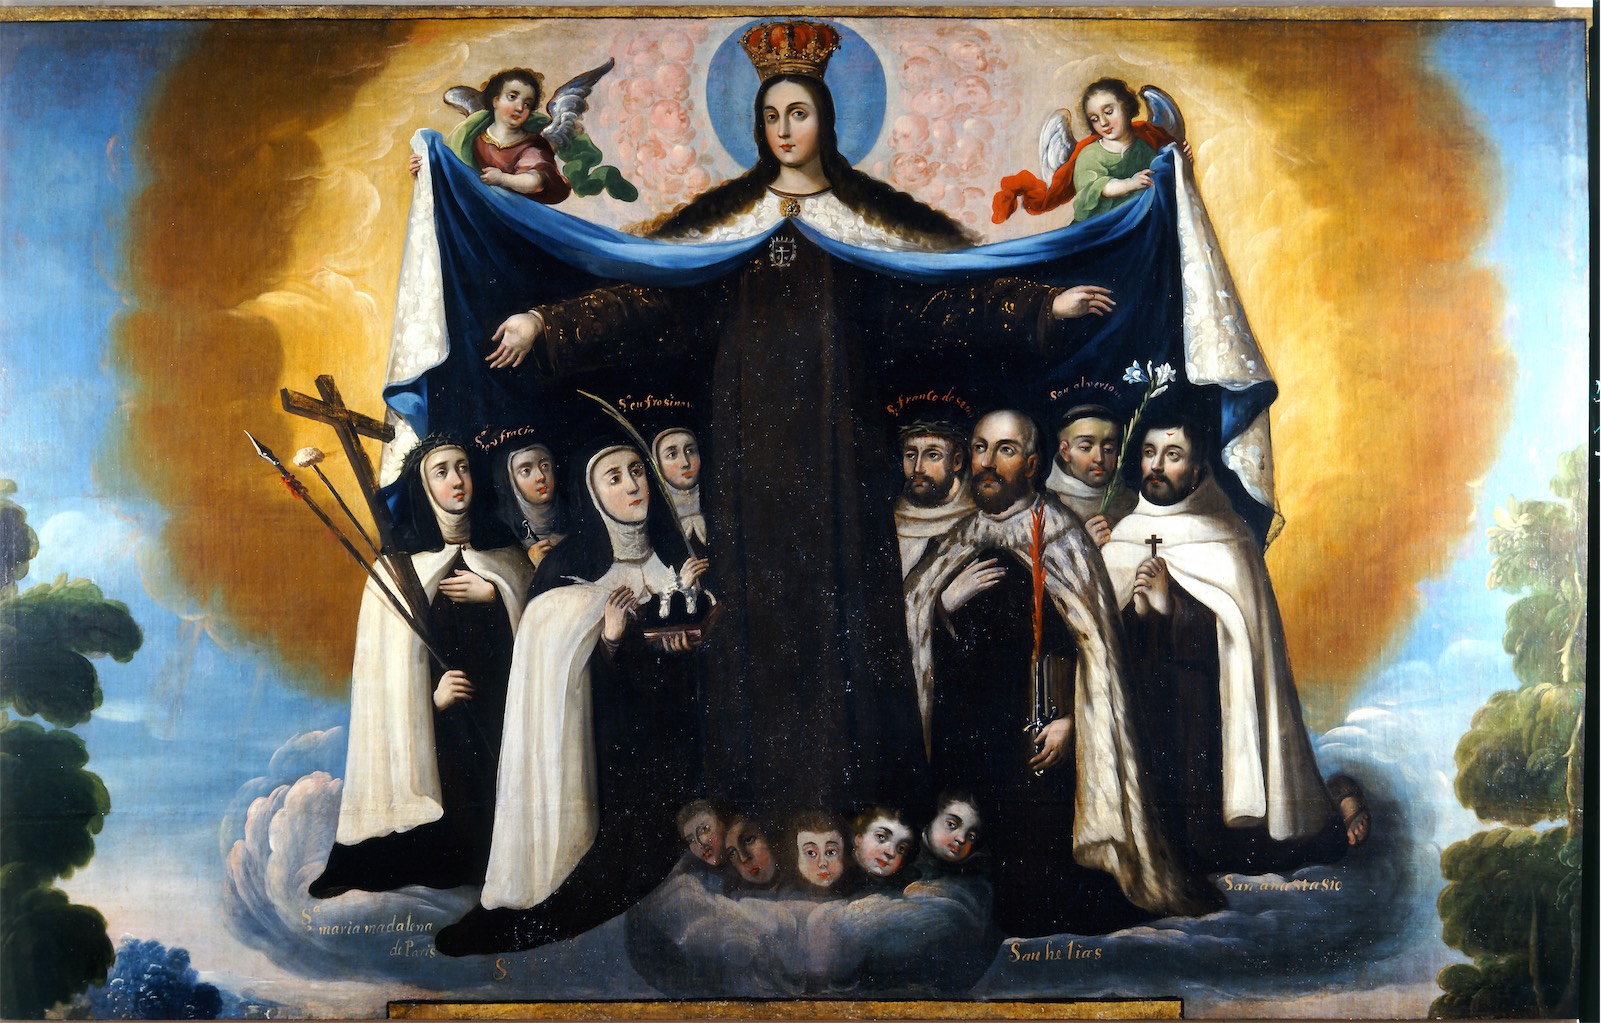 Patrocinio de la Virgen del Carmen a los santos de la orden